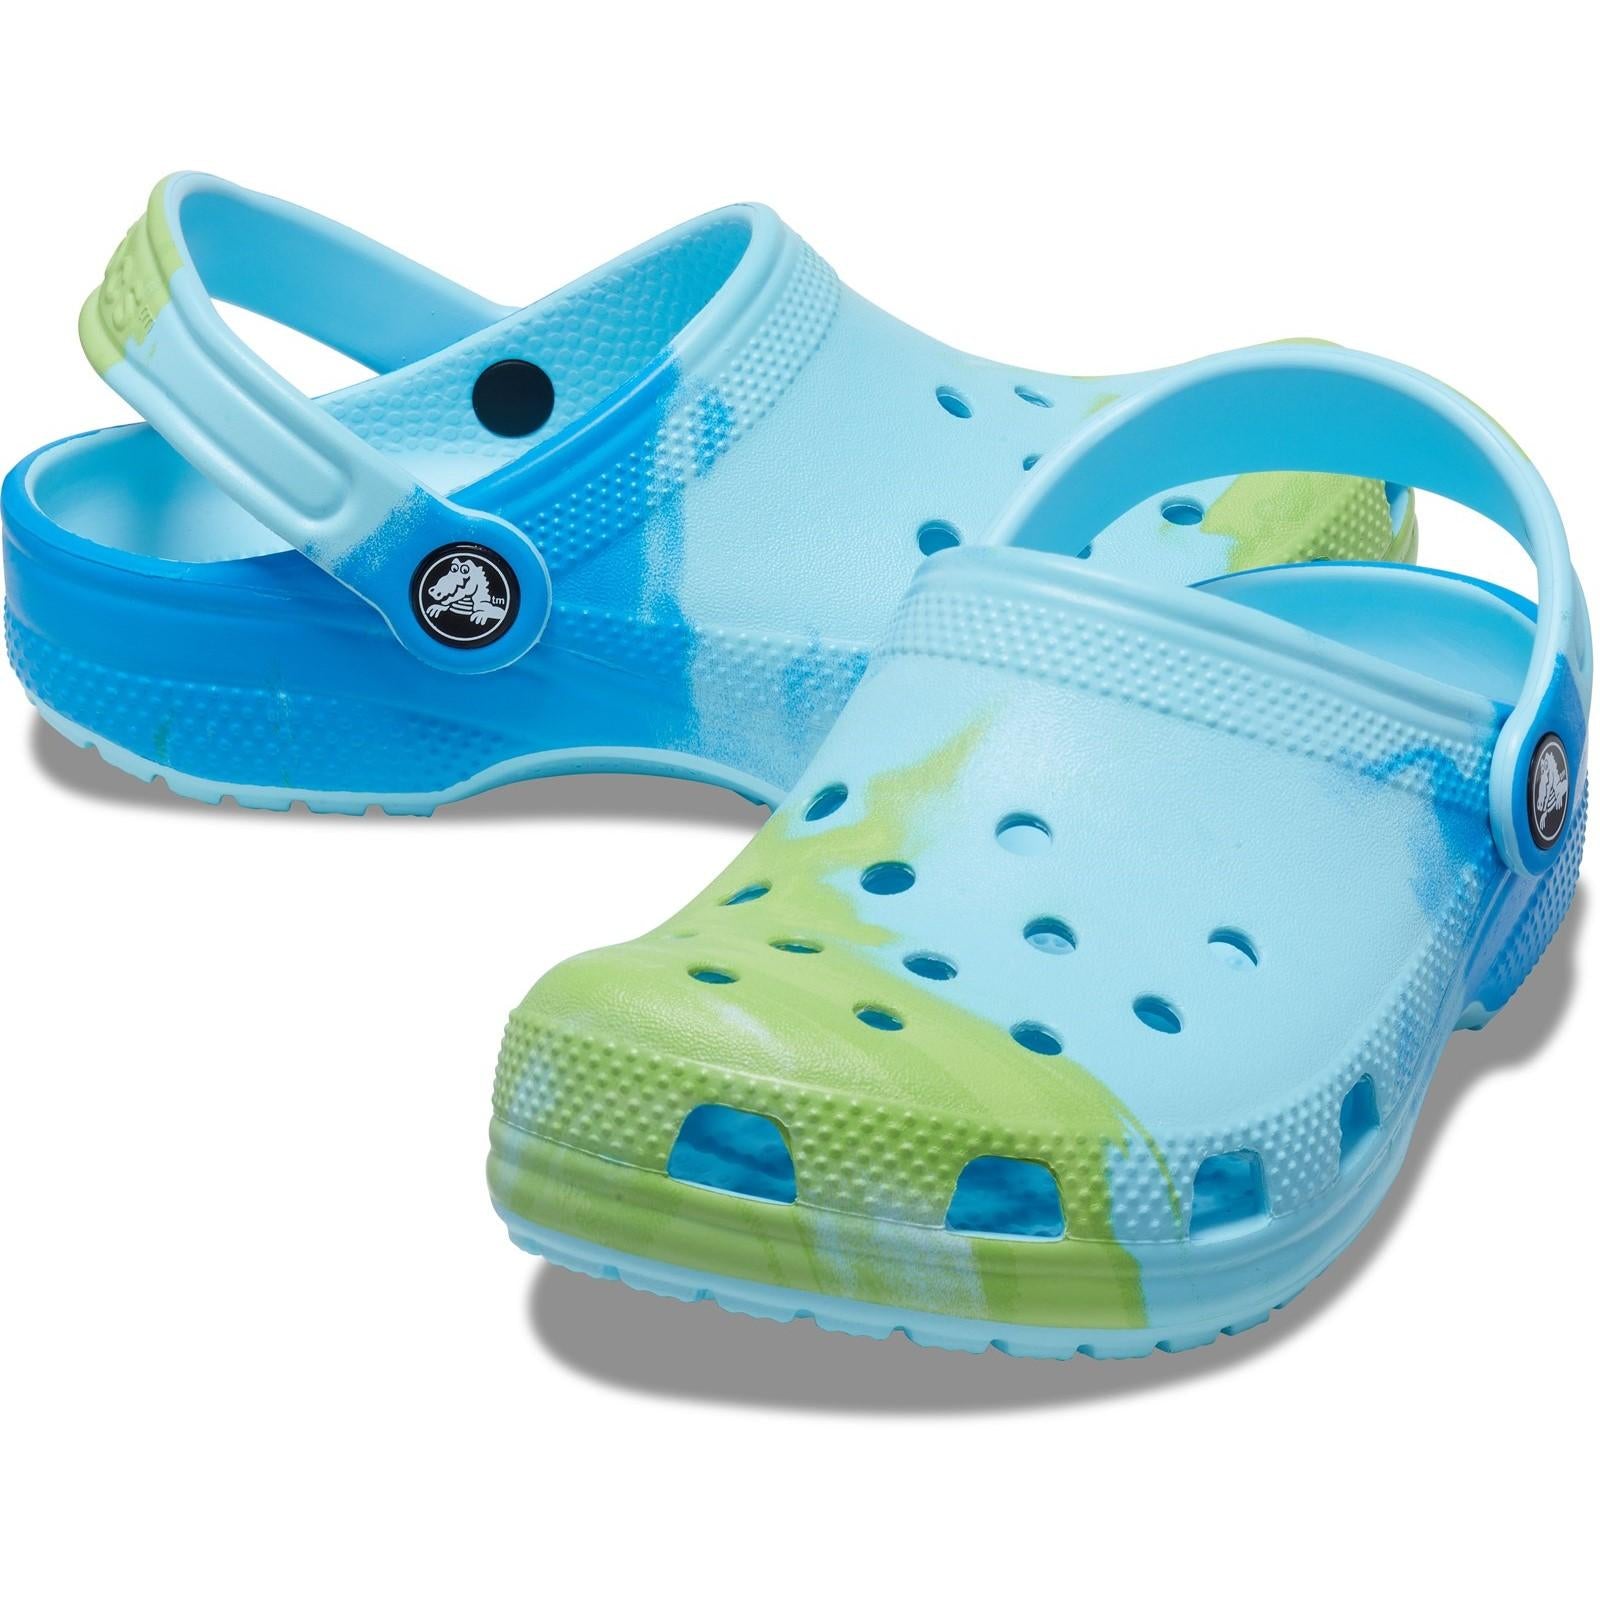 Crocs Classic Ombre Clog Shoes